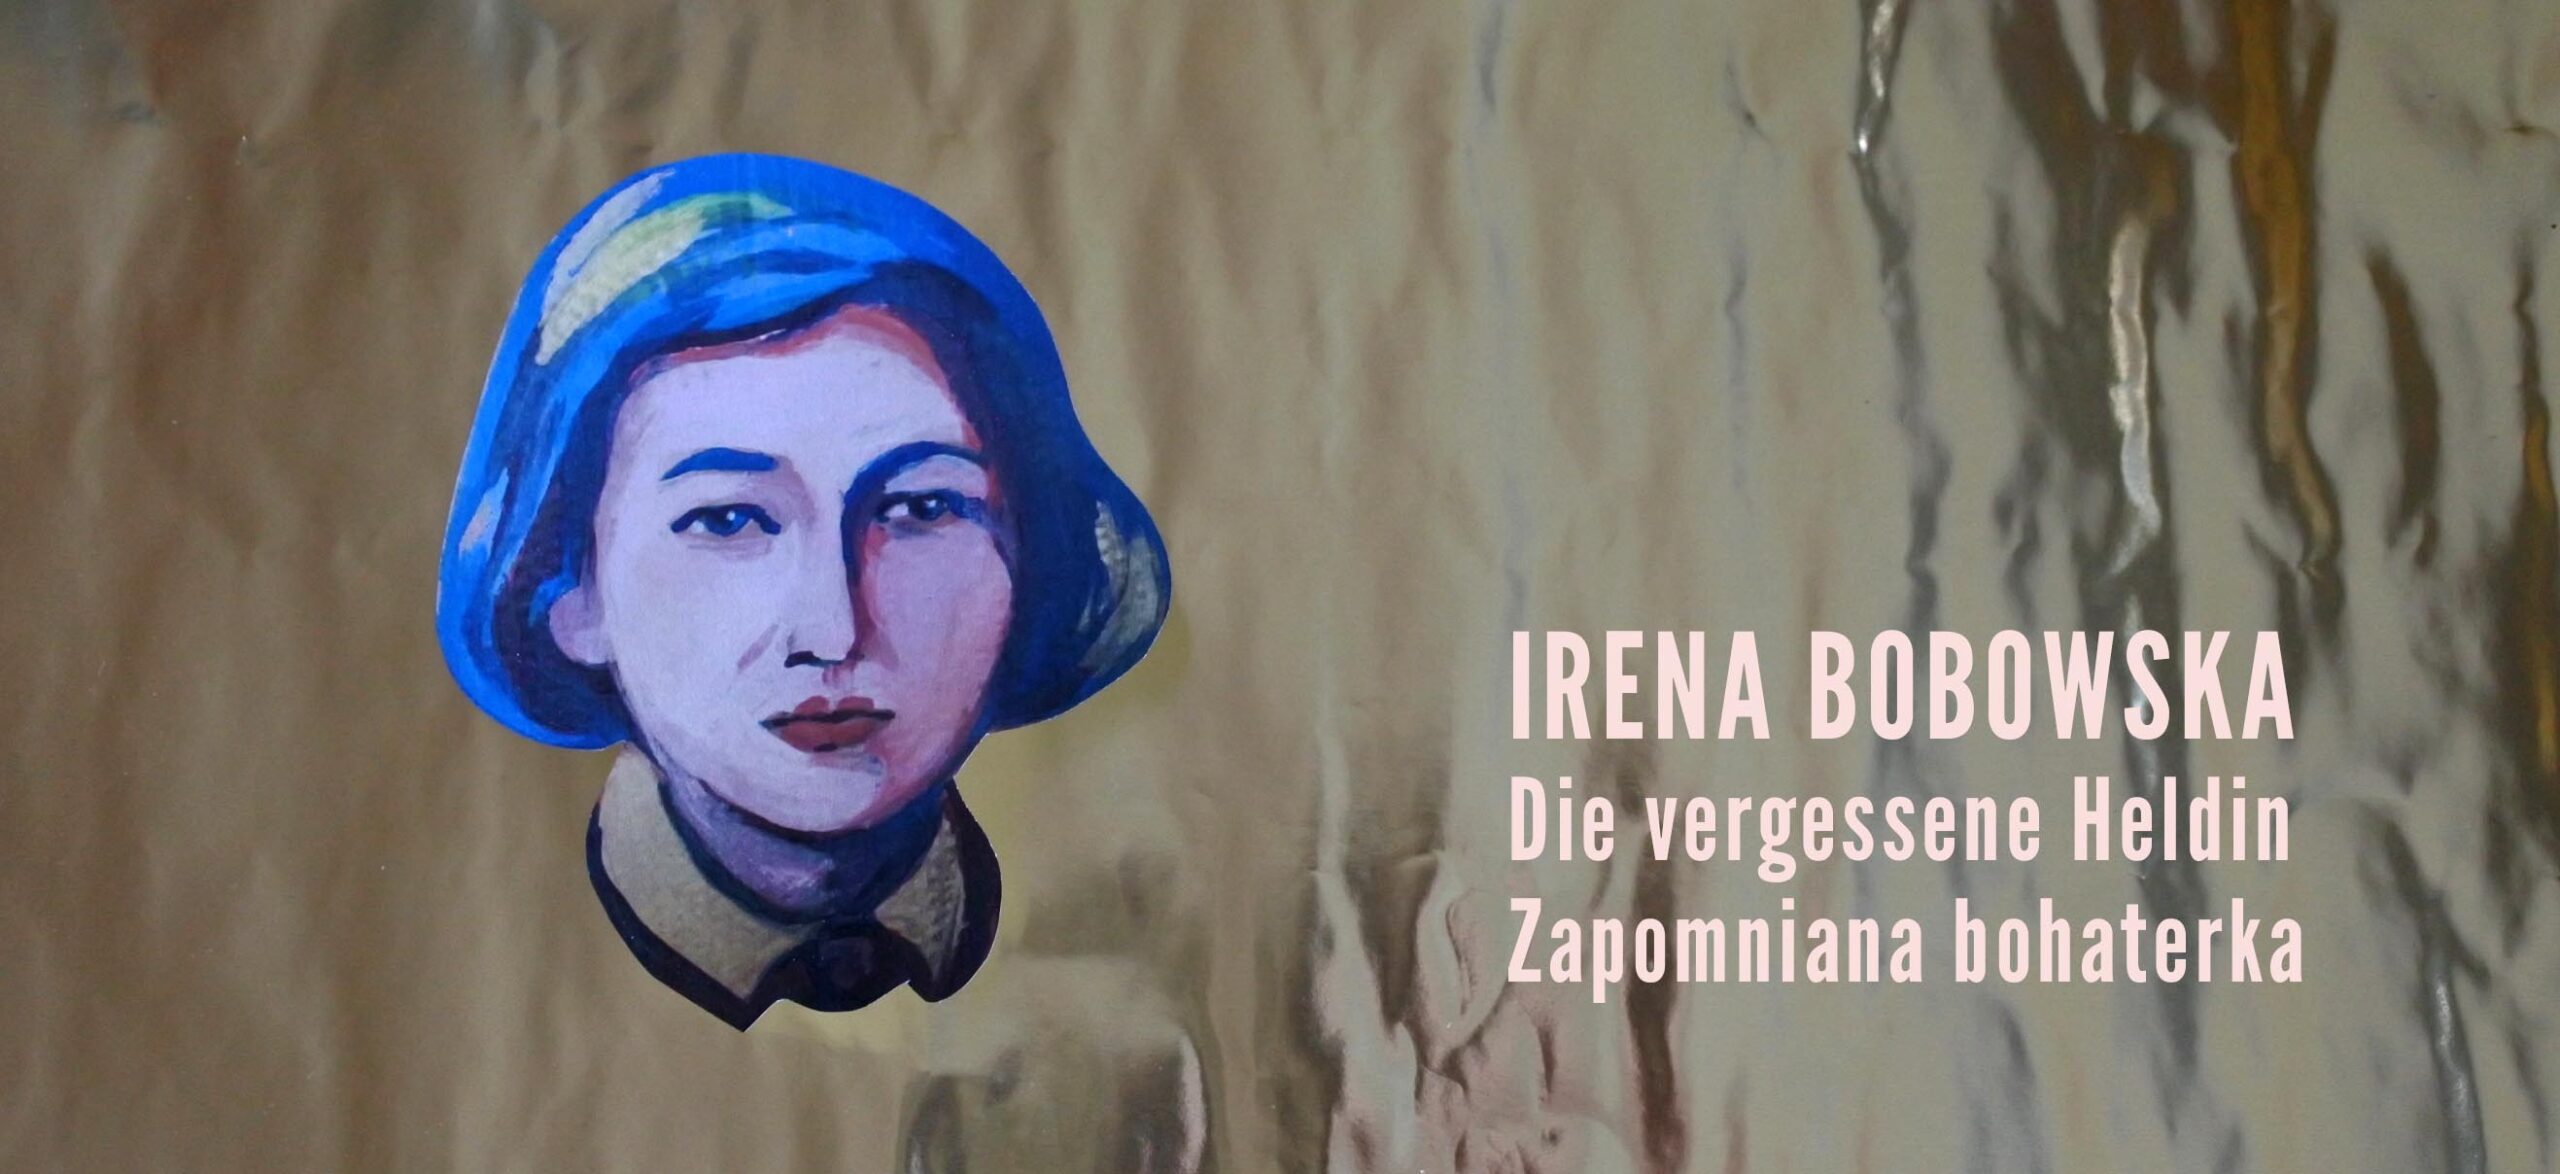 September 2022 | Projekt: Fehlende Hälfte der Geschichte. Irena Bobowska , die vergessene Heldin.